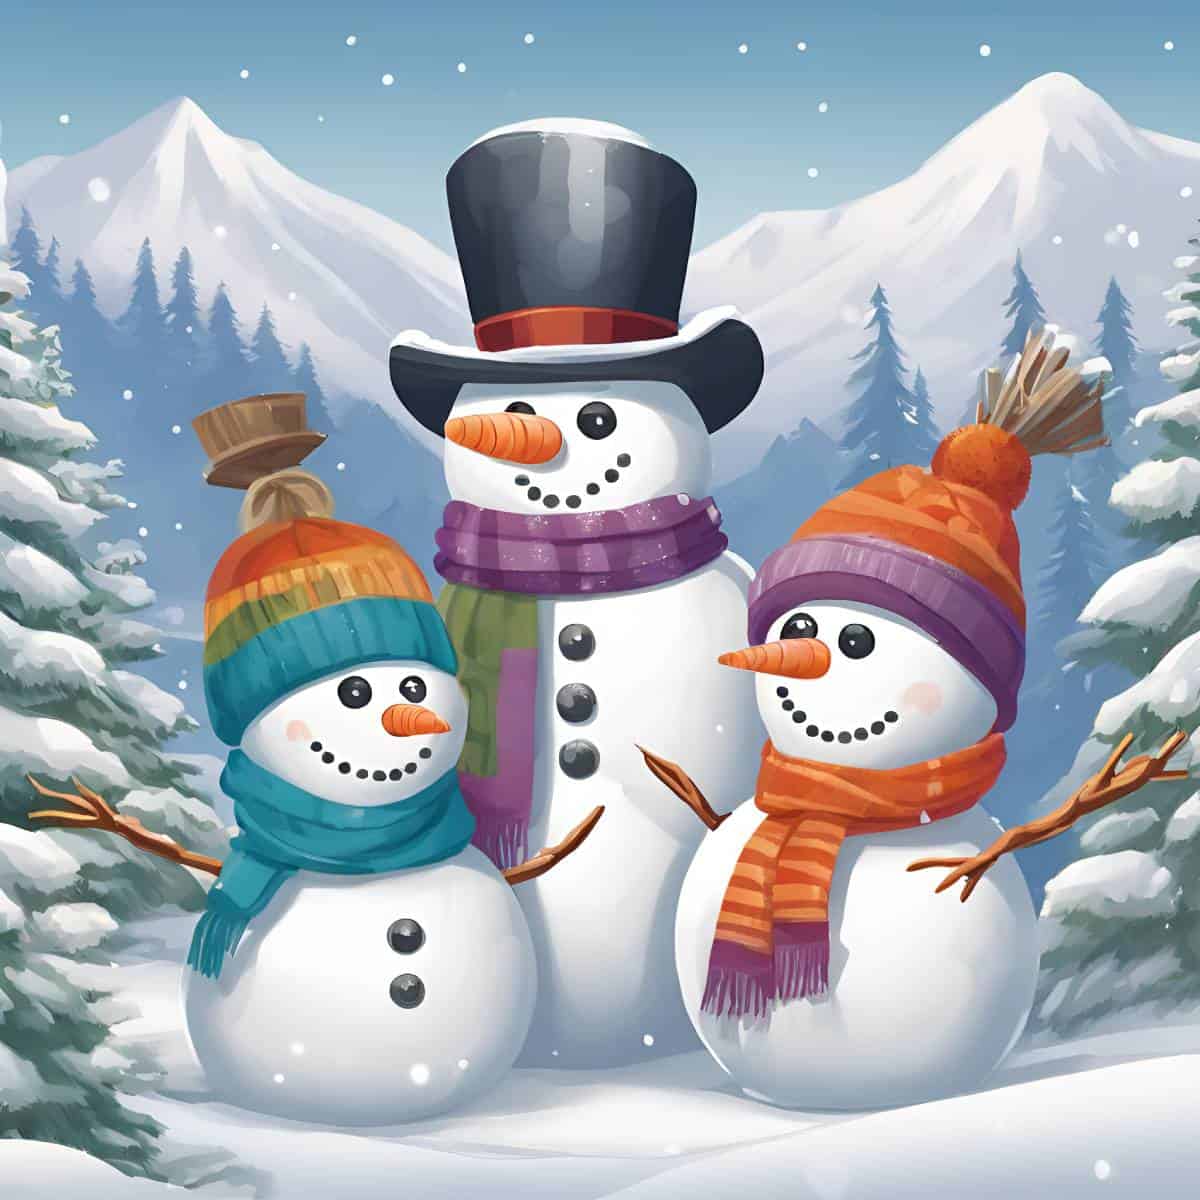 diamonds-wizard-diamond-painting-kit-events-christmas-snowman-family-original.jpg